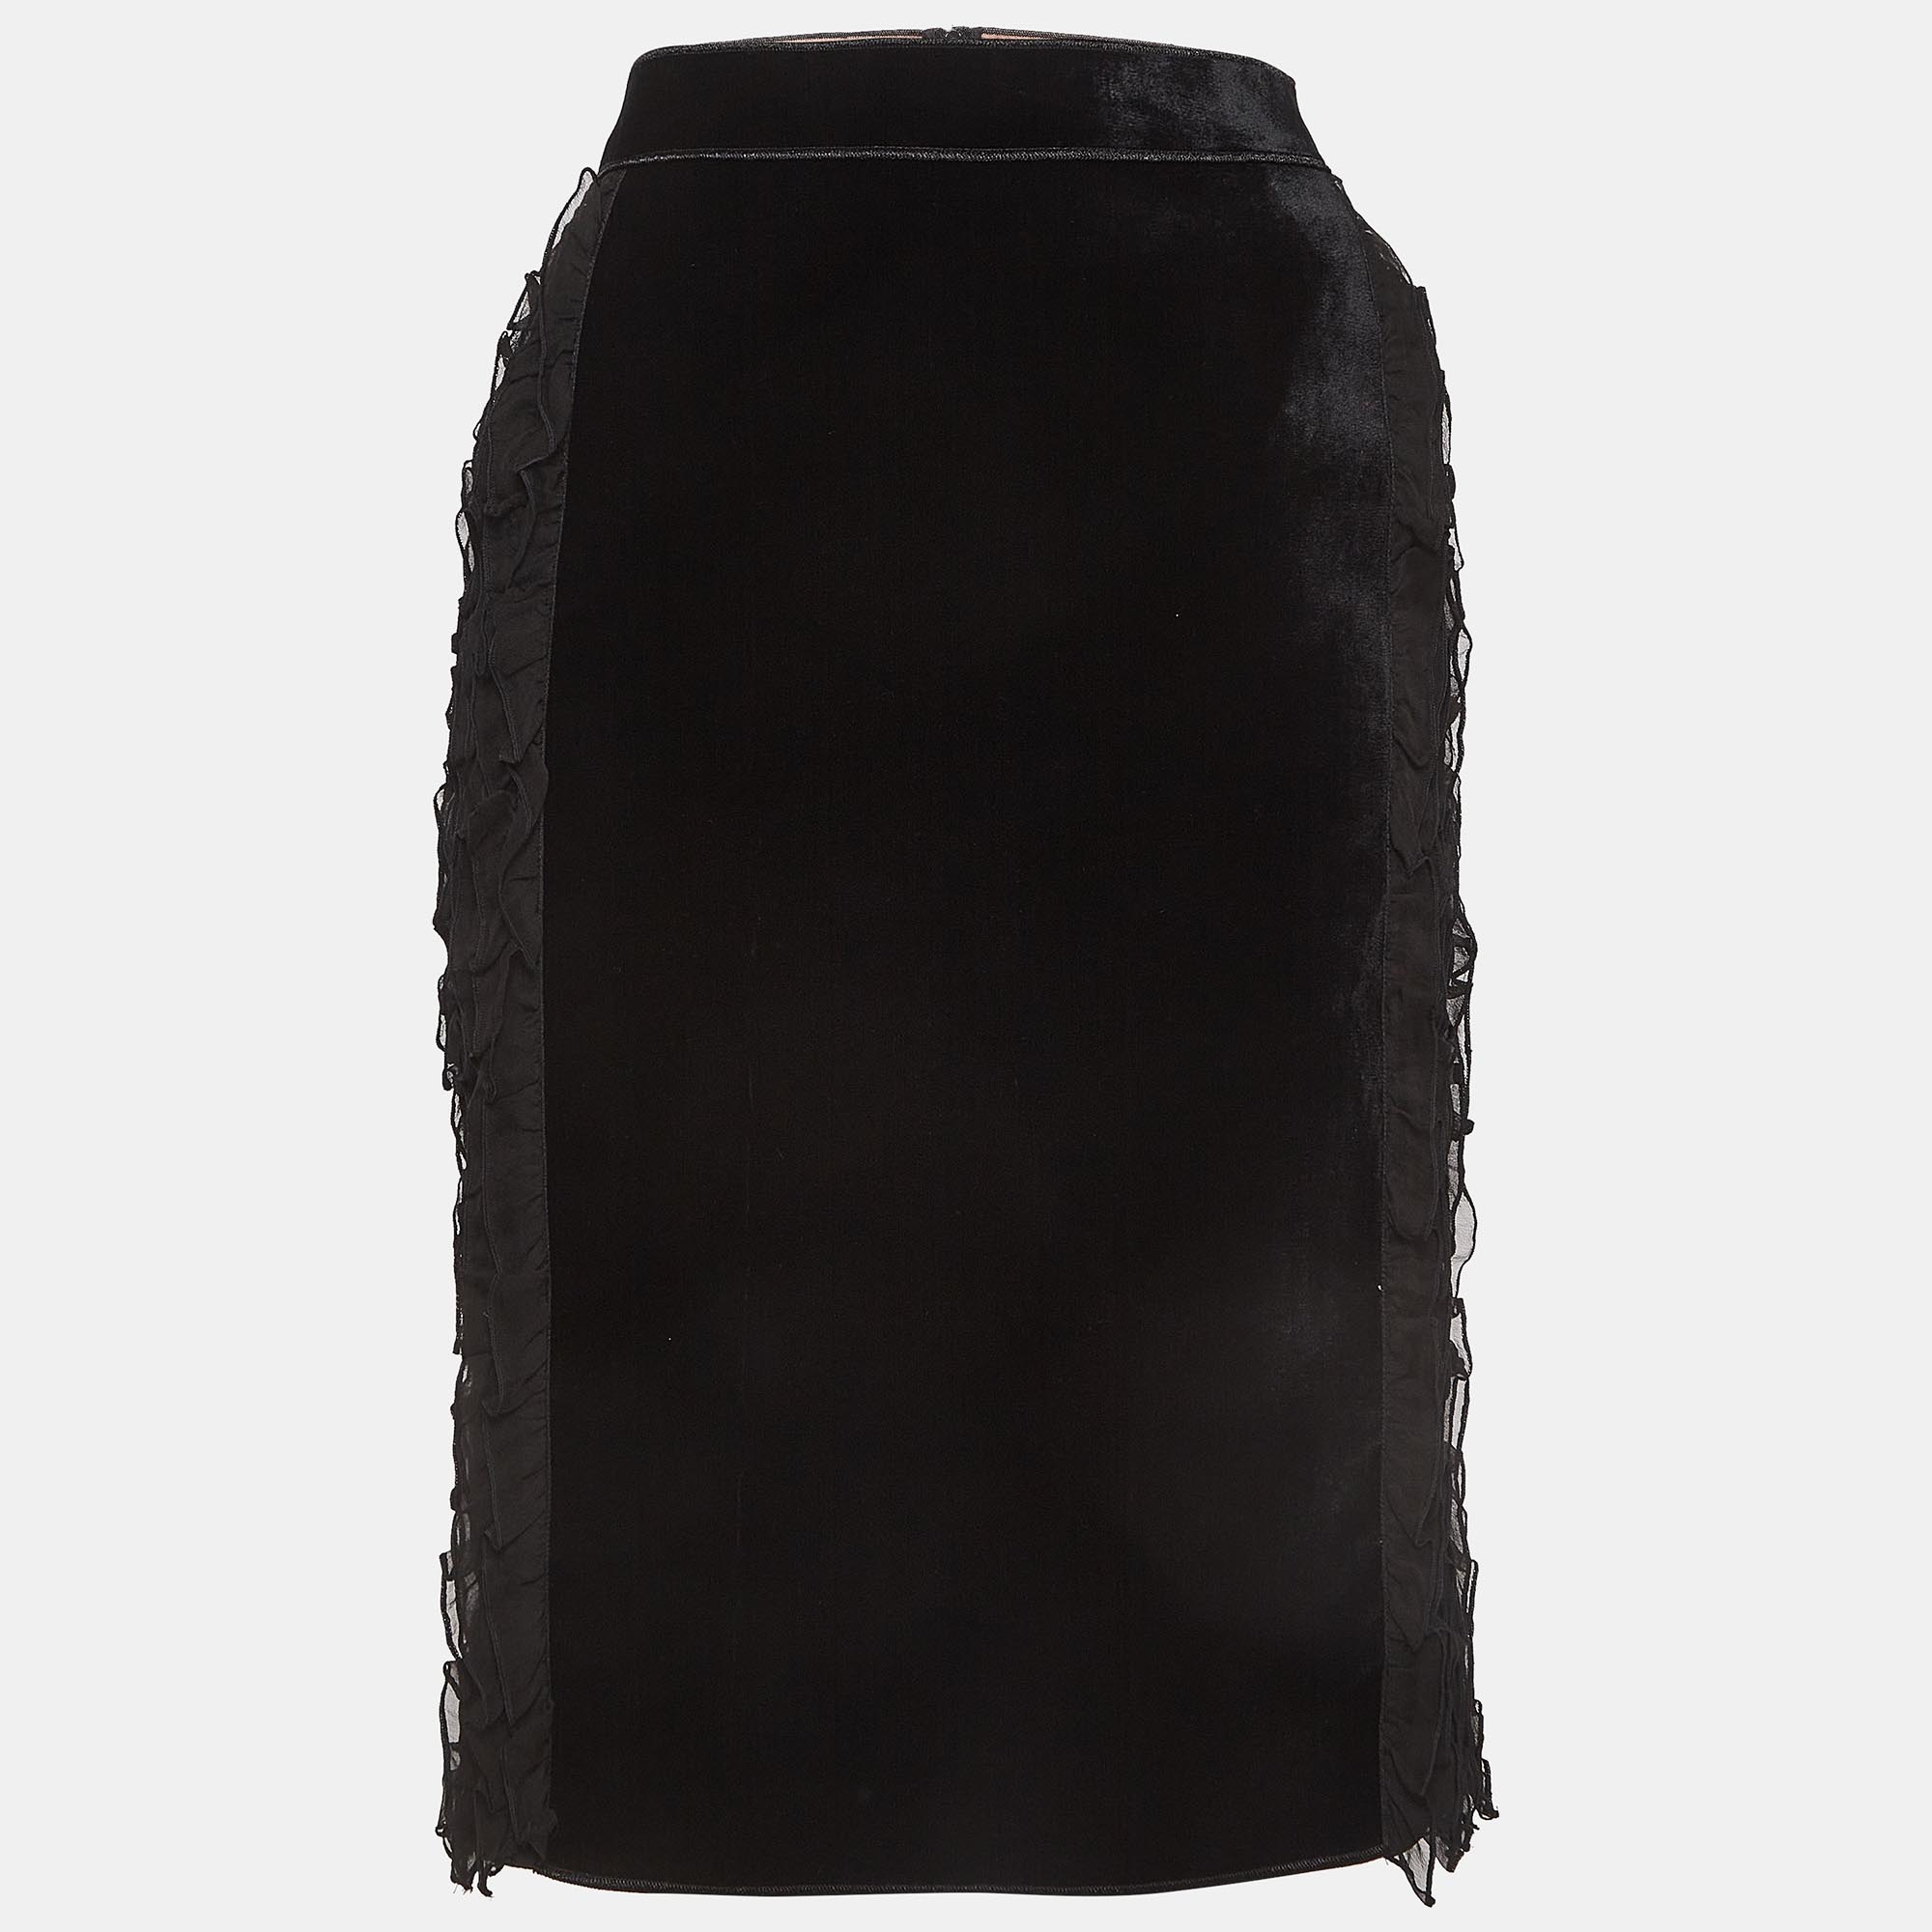 N21 black velvet ruffled pencil skirt s